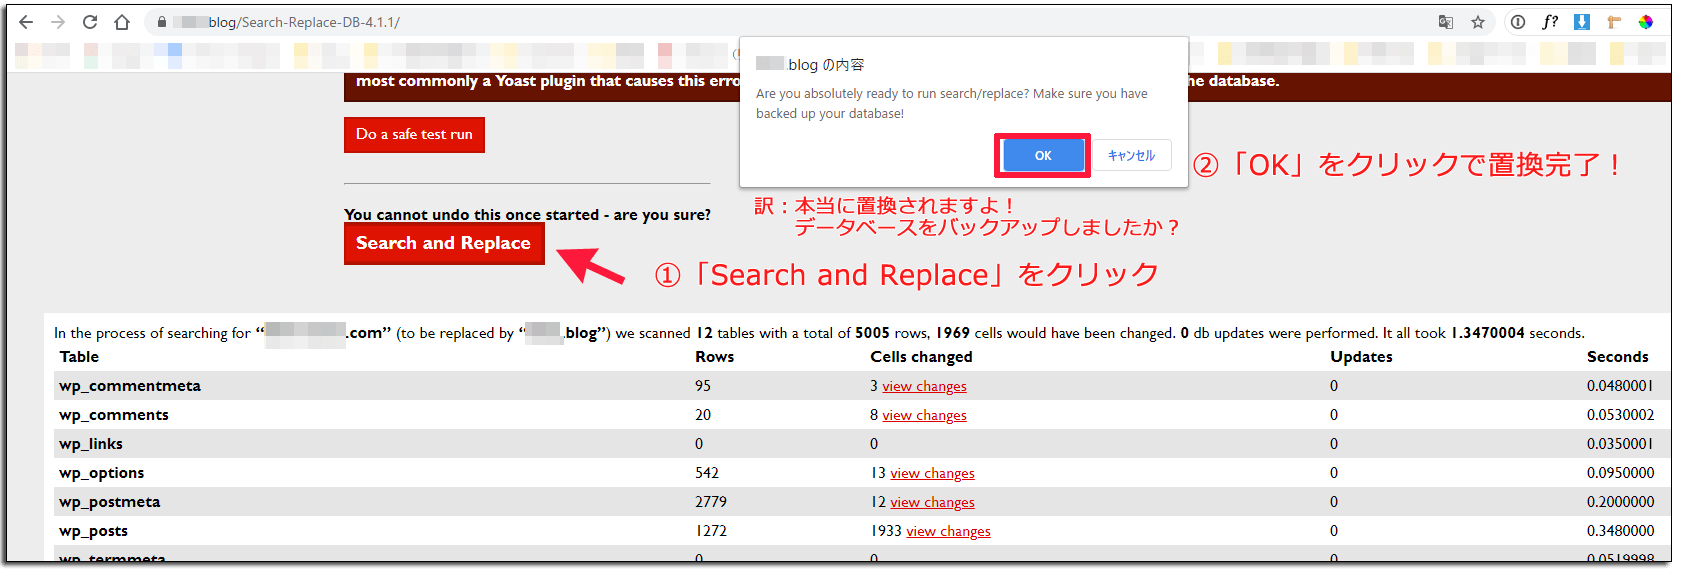 「Search and Replace」をクリックするとデータベースをバックアップしましたか？と注意喚起のダイアログが出る。